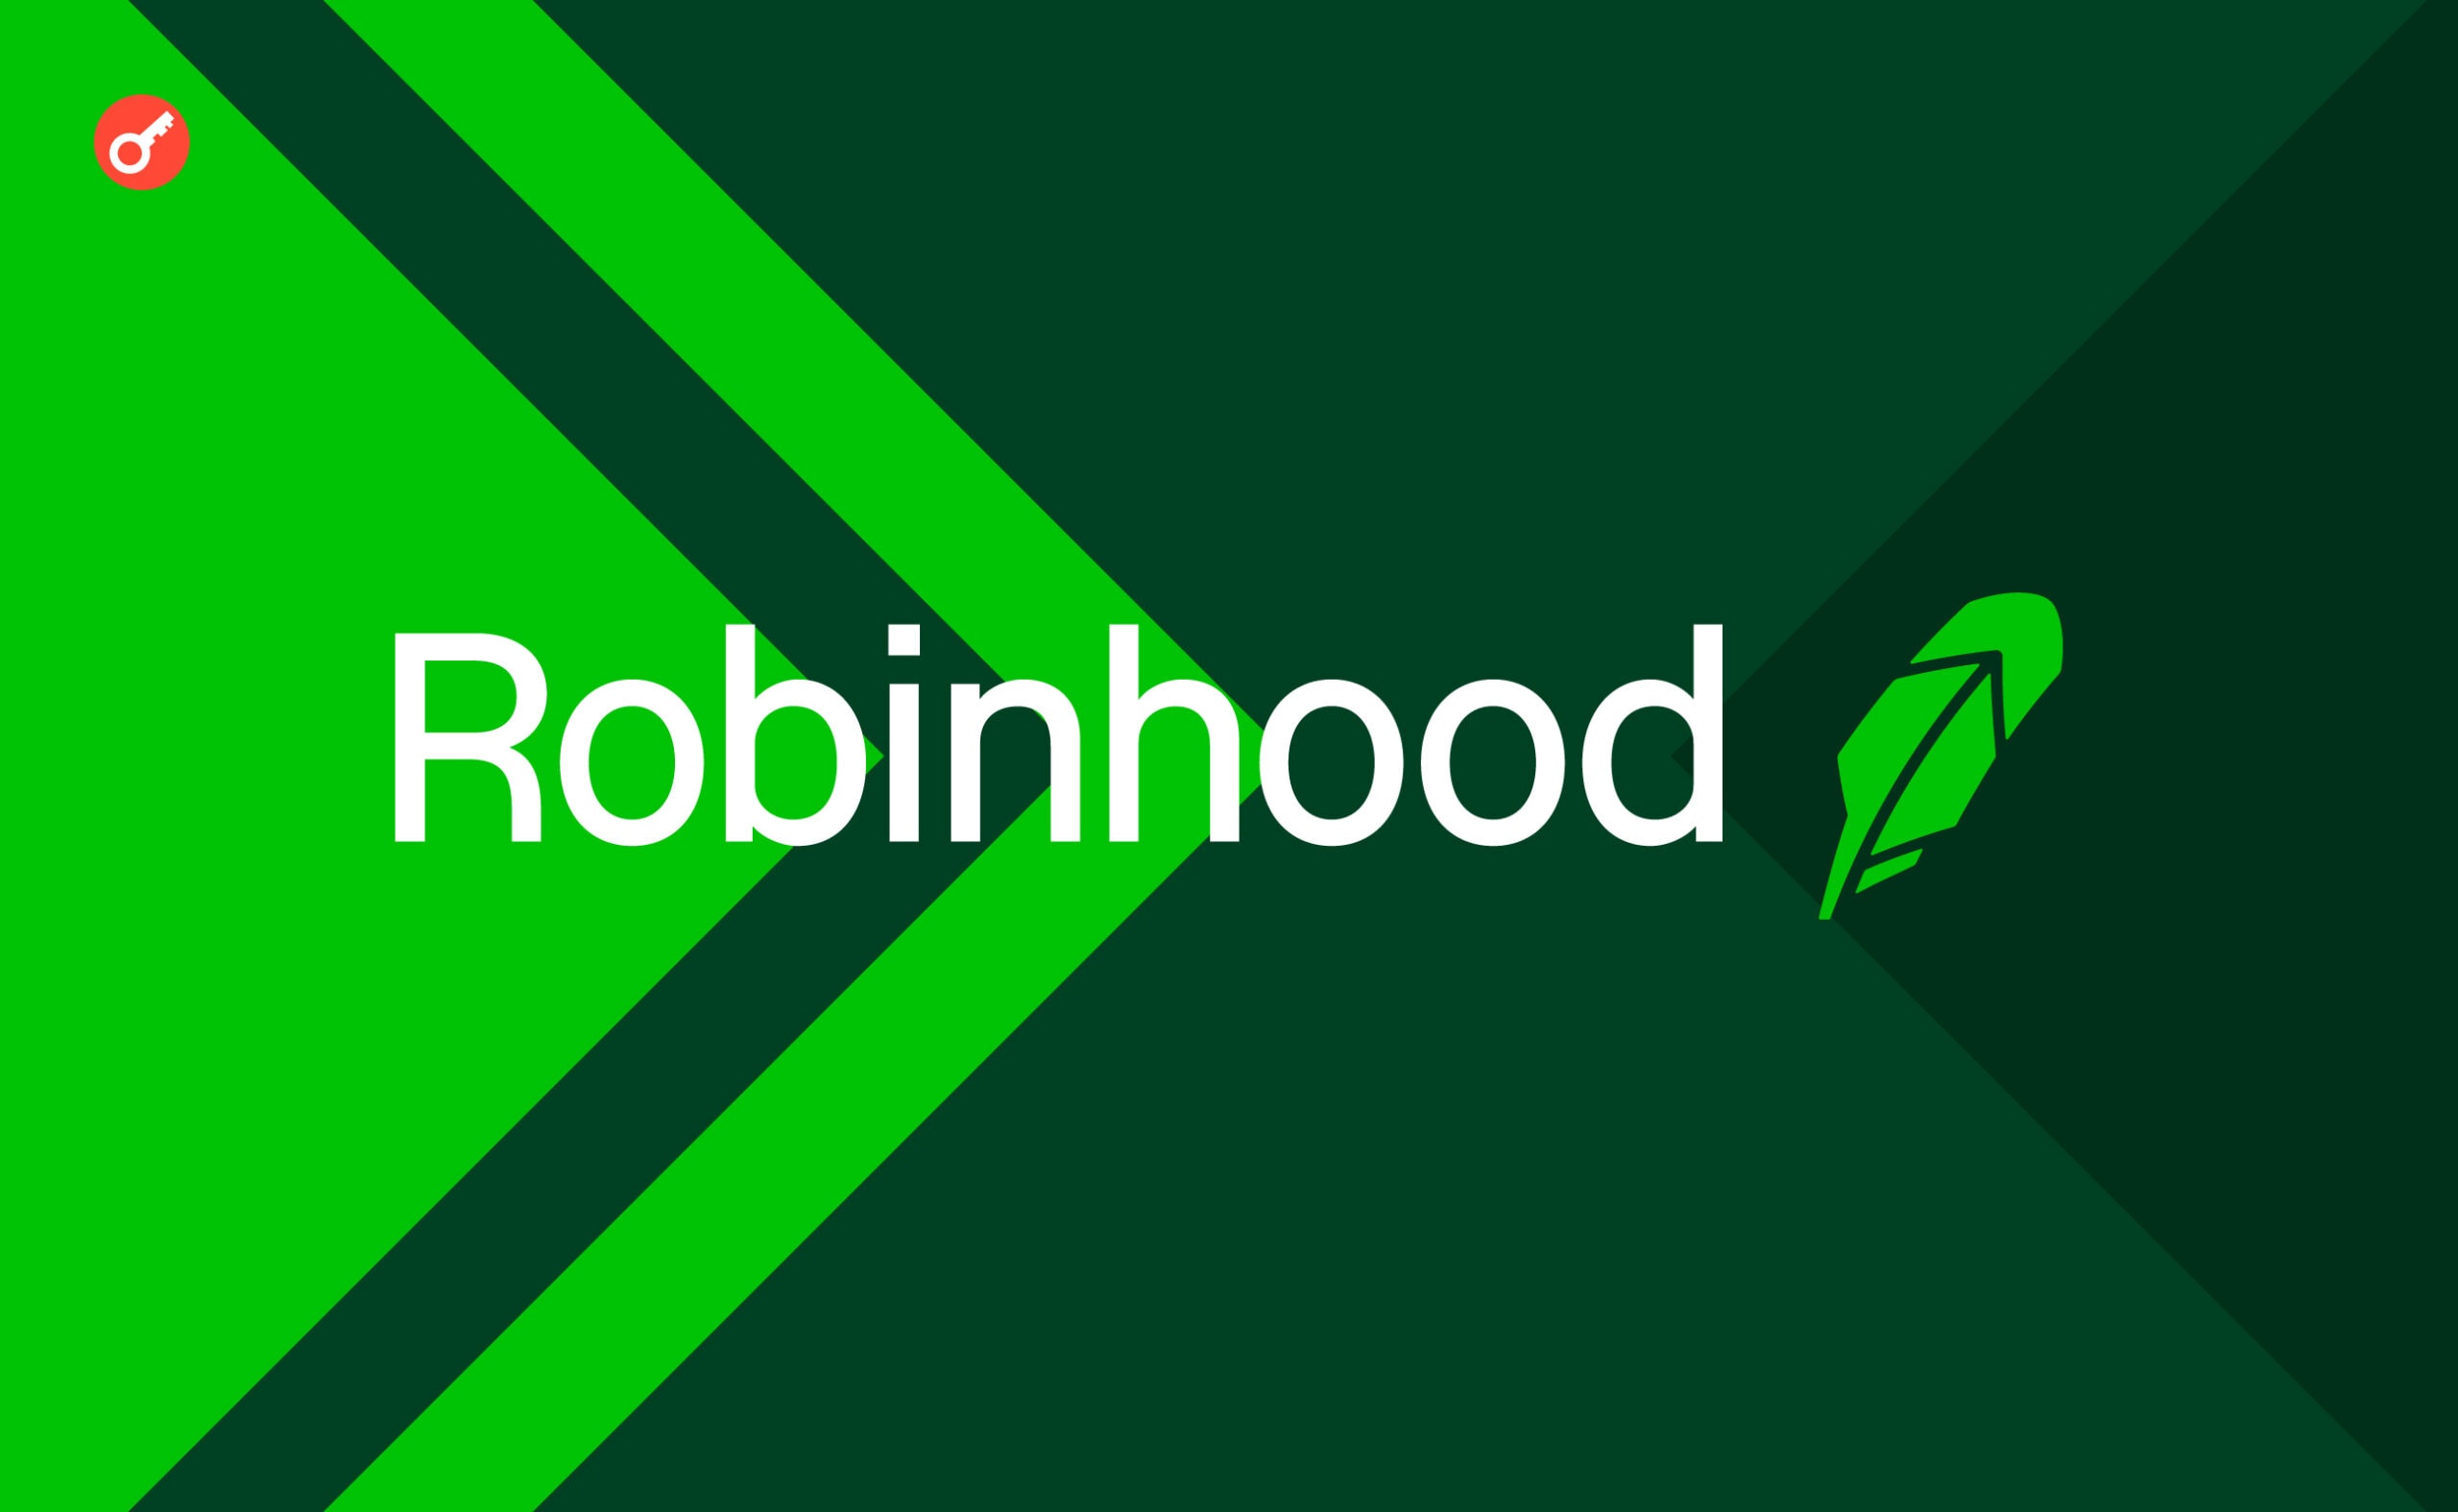 Robinhood виплатить штраф у $10,2 млн через технічні проблеми 2020 року. Головний колаж новини.